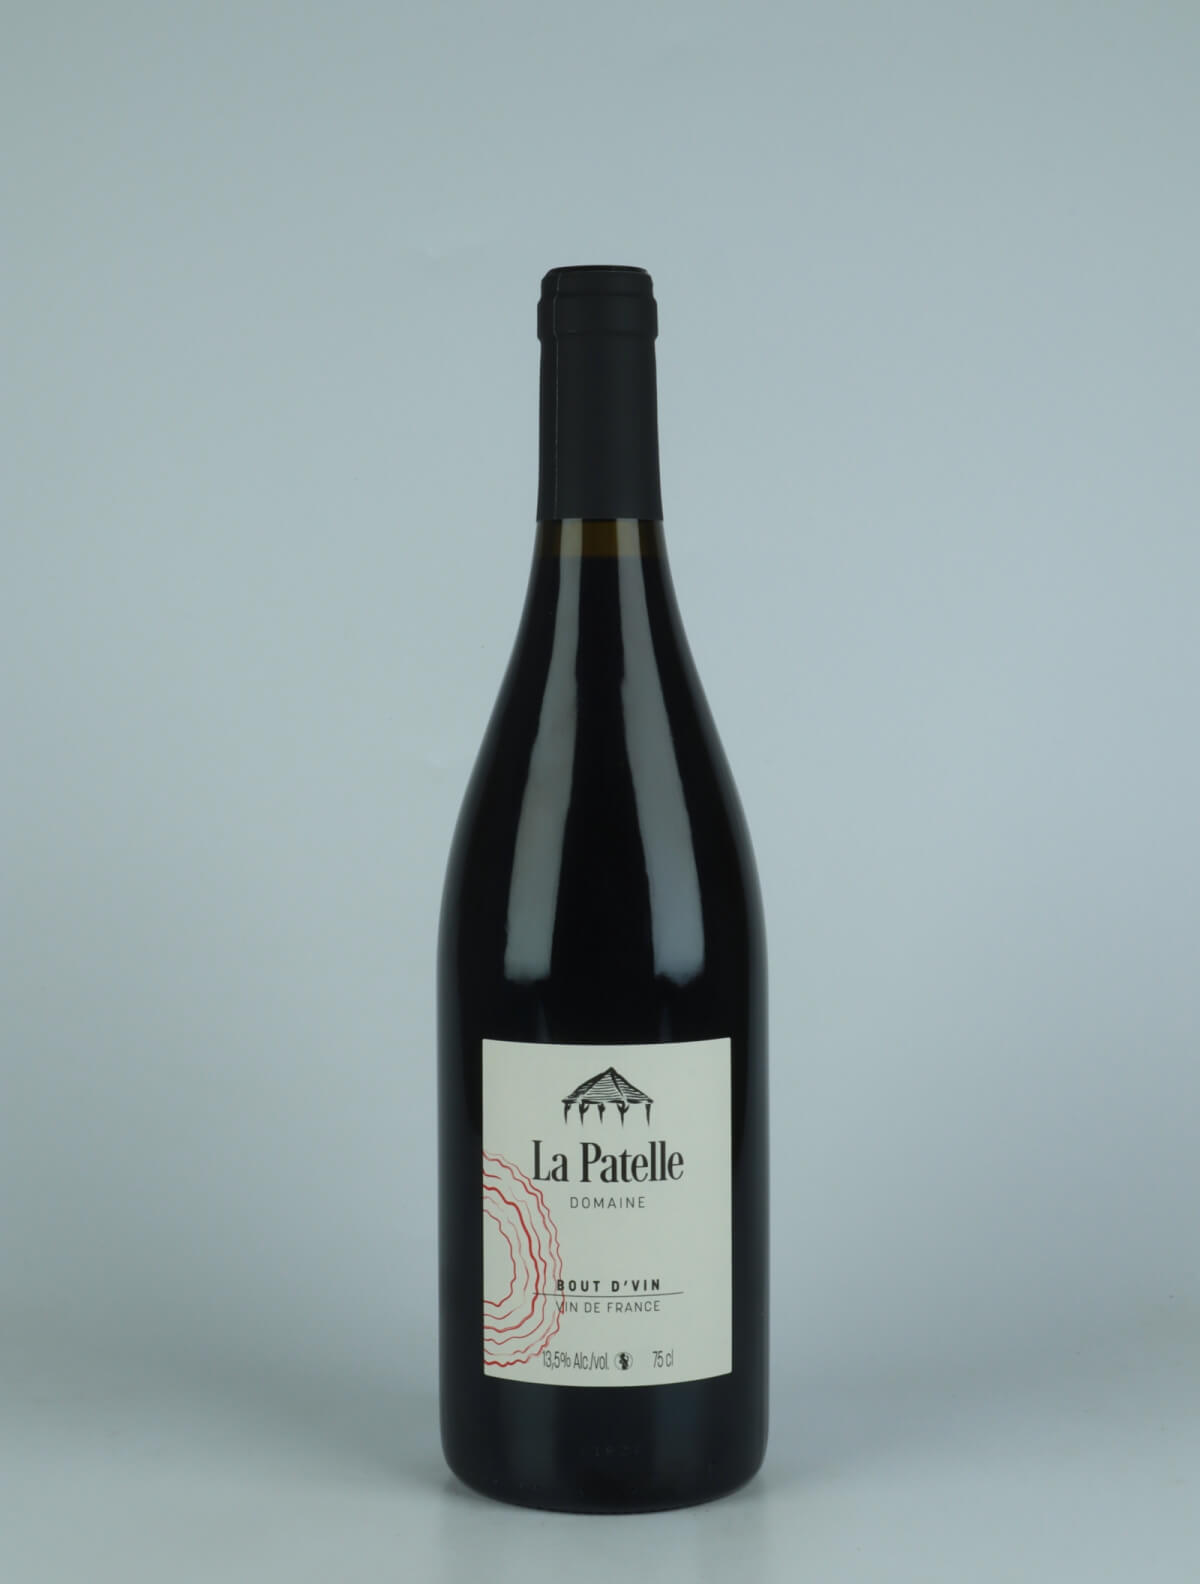 A bottle 2022 Bout d'Vin - Trousseau Red wine from Domaine de La Patelle, Jura in France